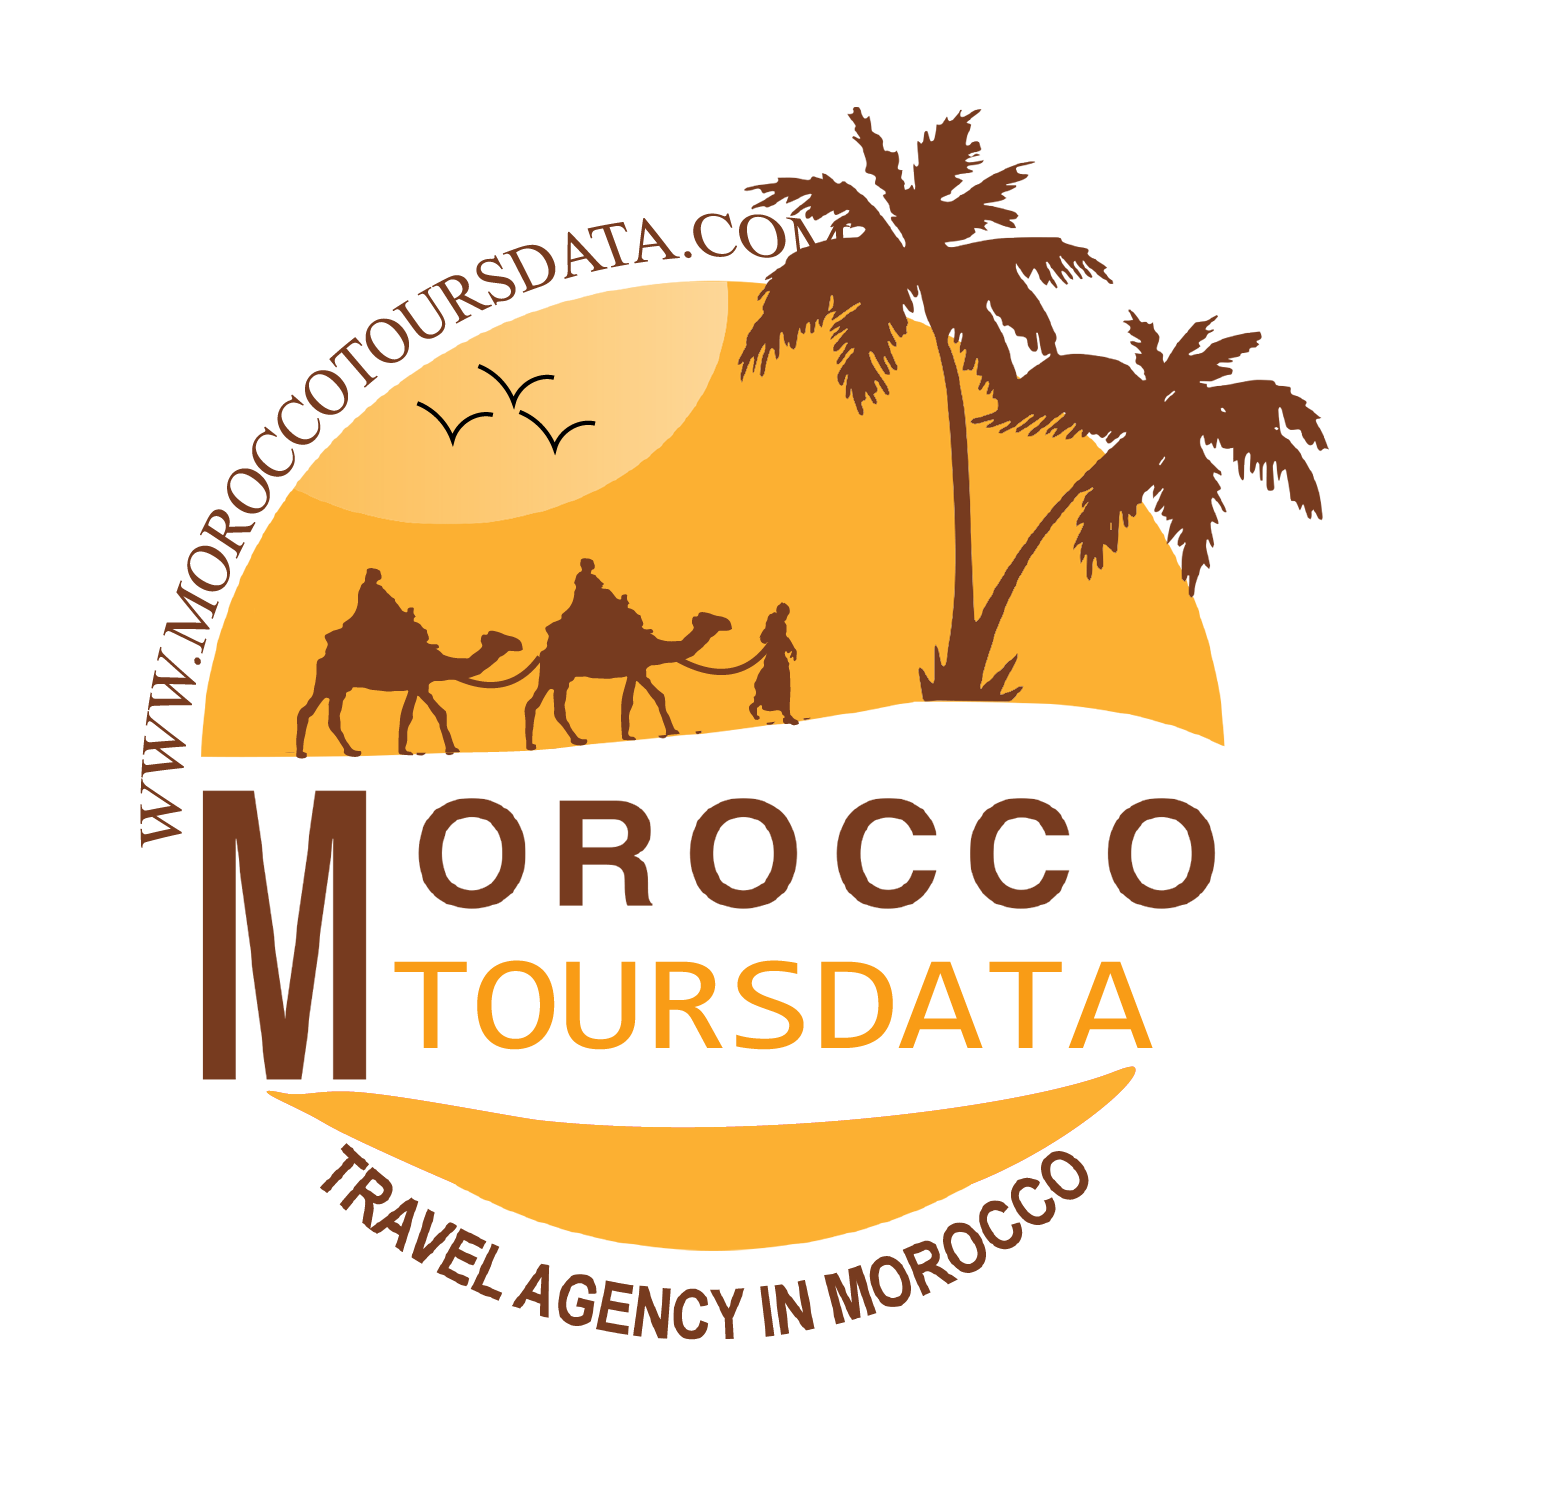 tourinmorocco maroc marueco agency